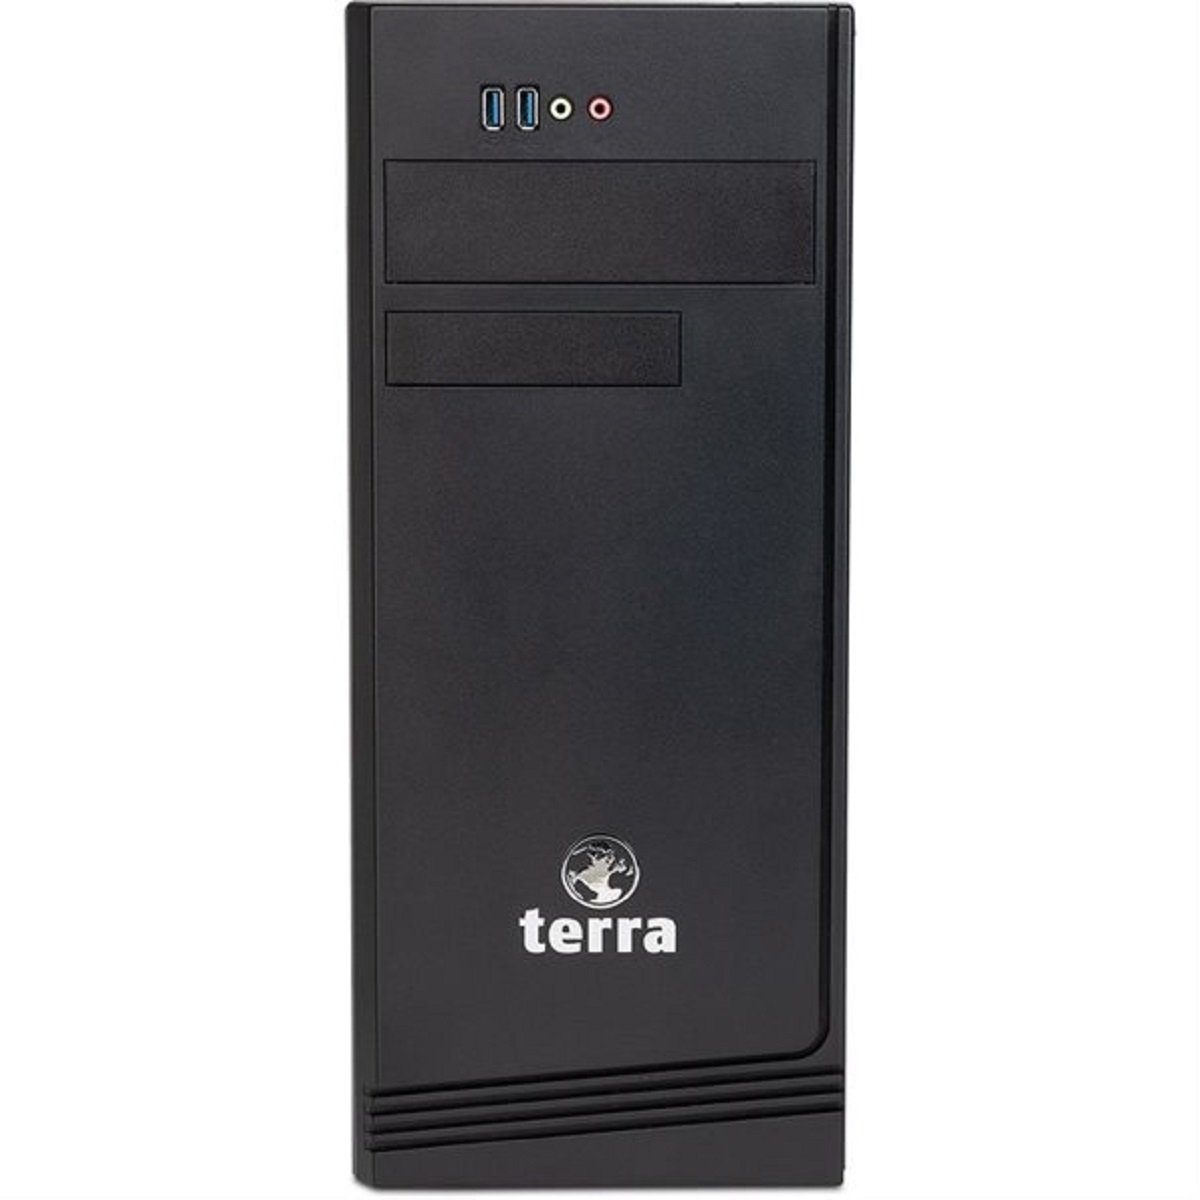 TERRA TERRA PC-BUSINESS 7000 - Intel Core i7 (14. Gen) Business-PC (Intel Intel Core i7 14700, 16 GB RAM, 1000 GB SSD)